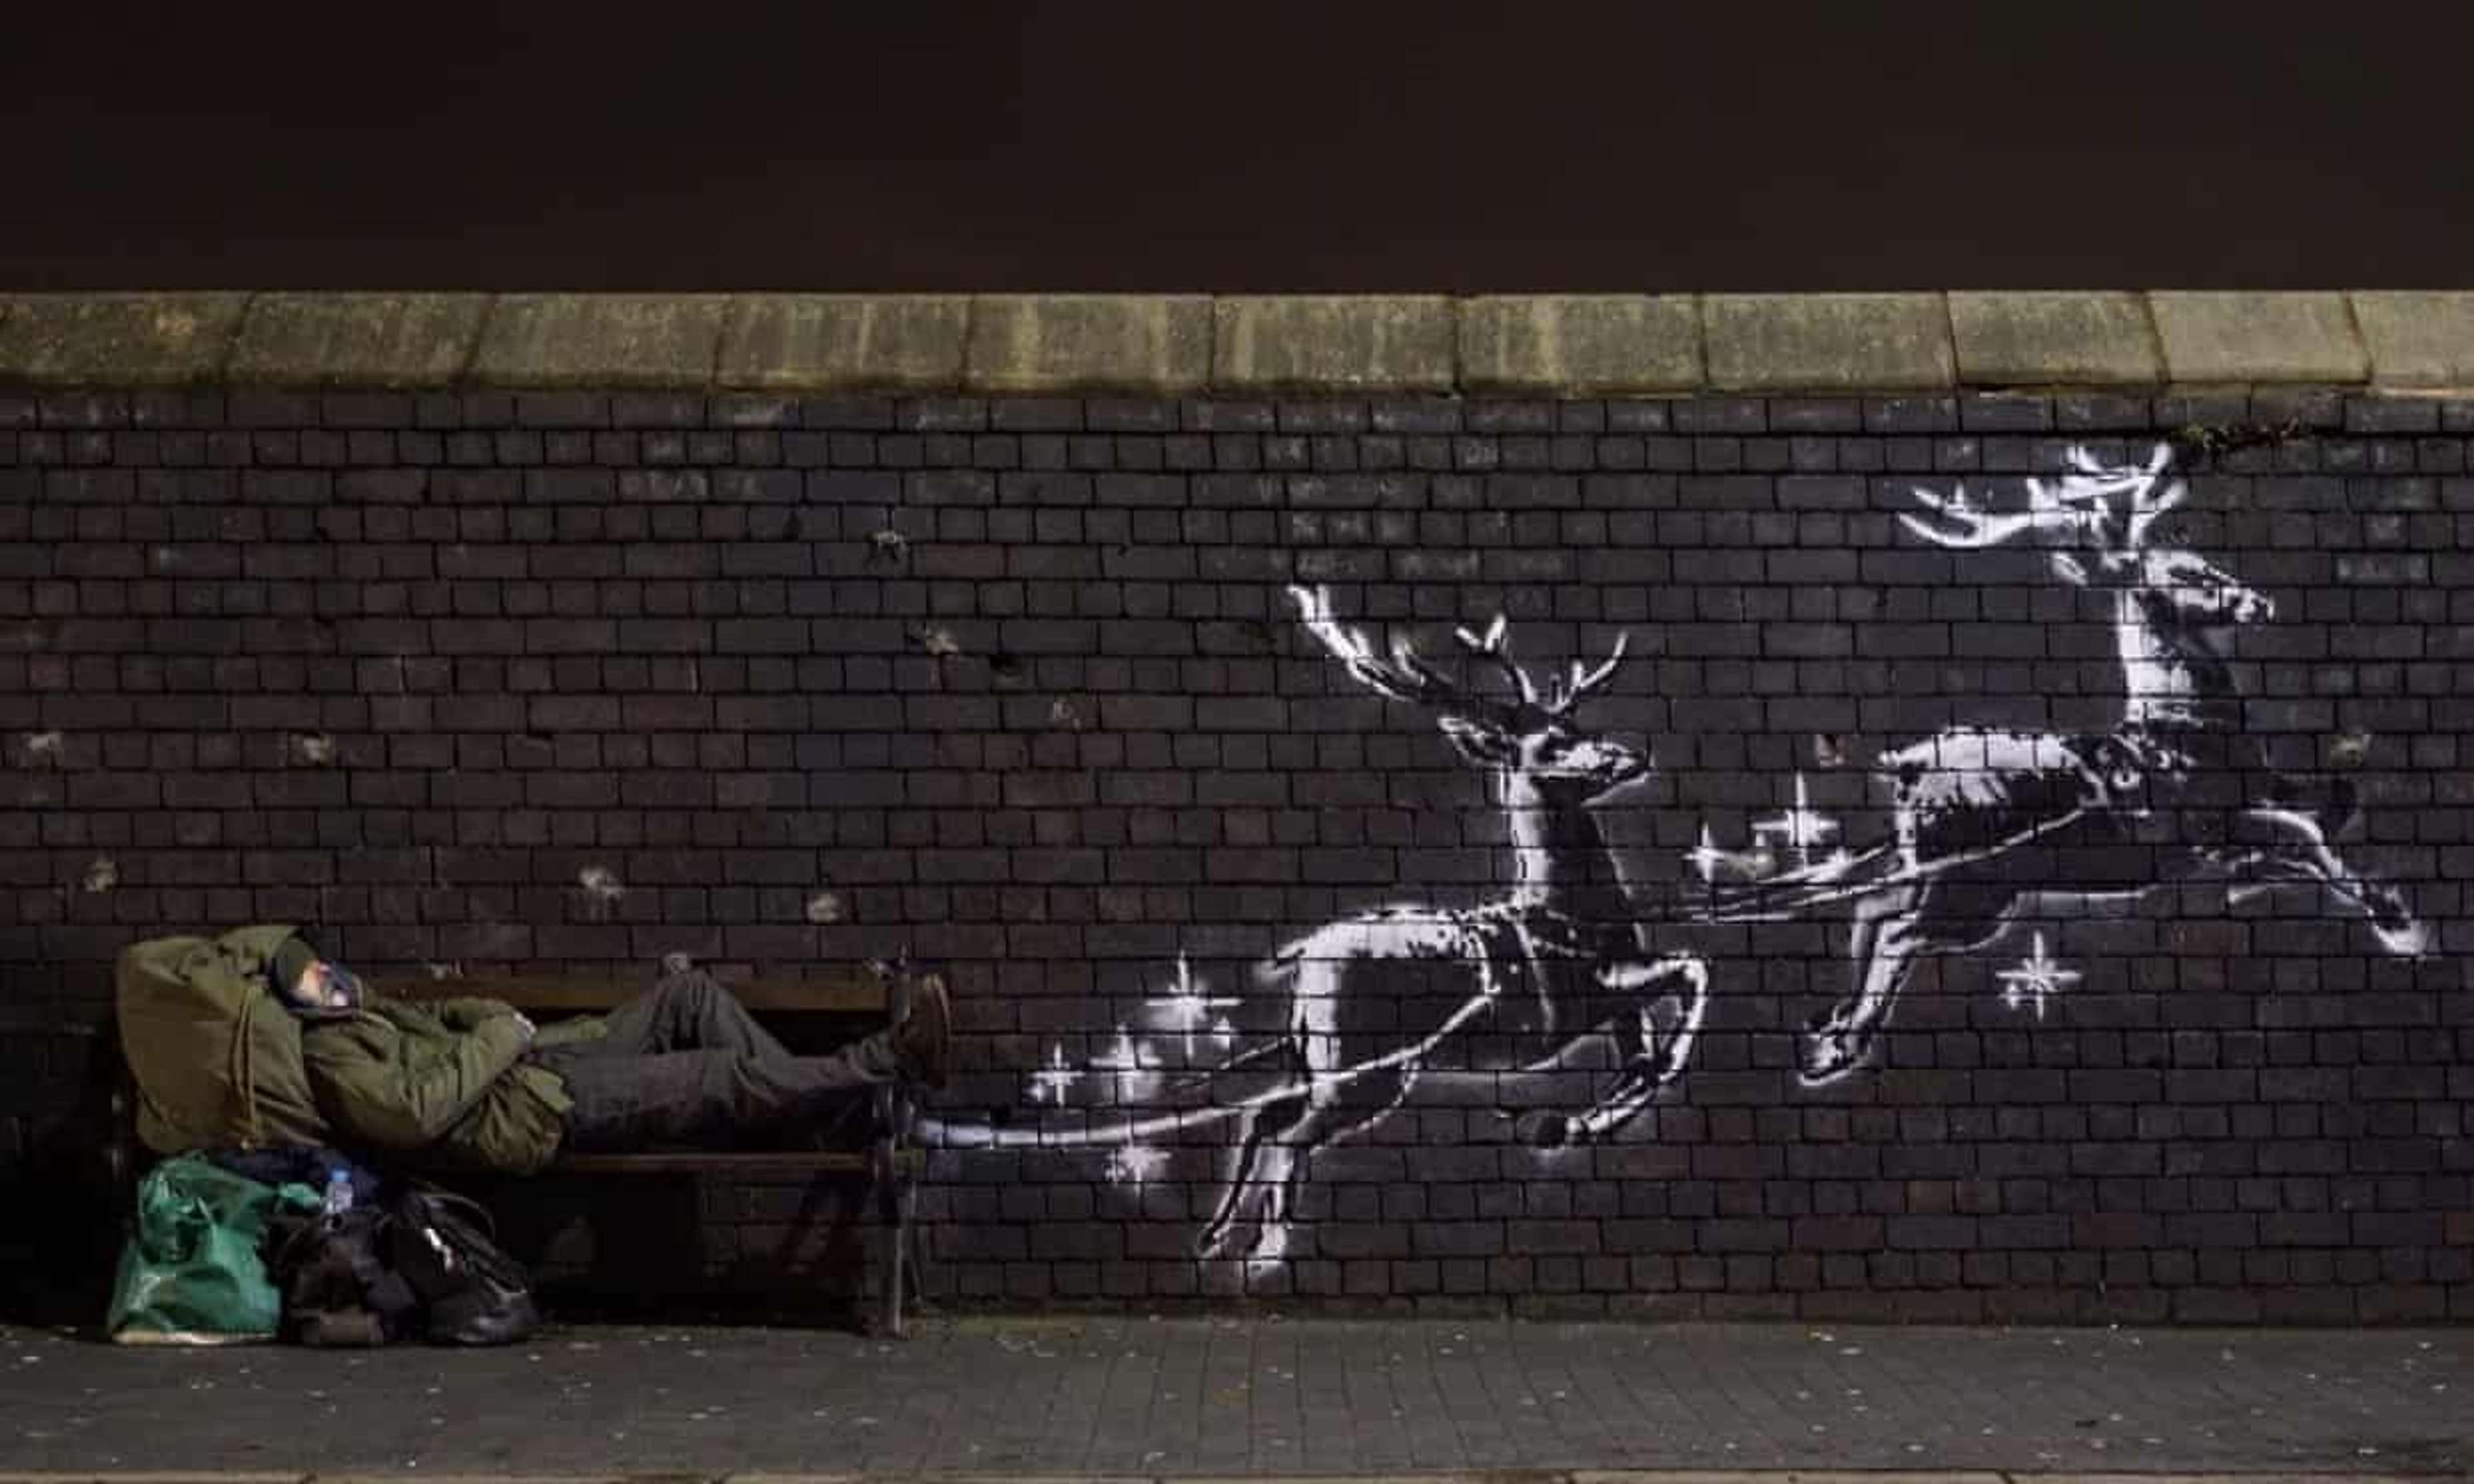 Christmas Mural by Banksy - MyArtBroker